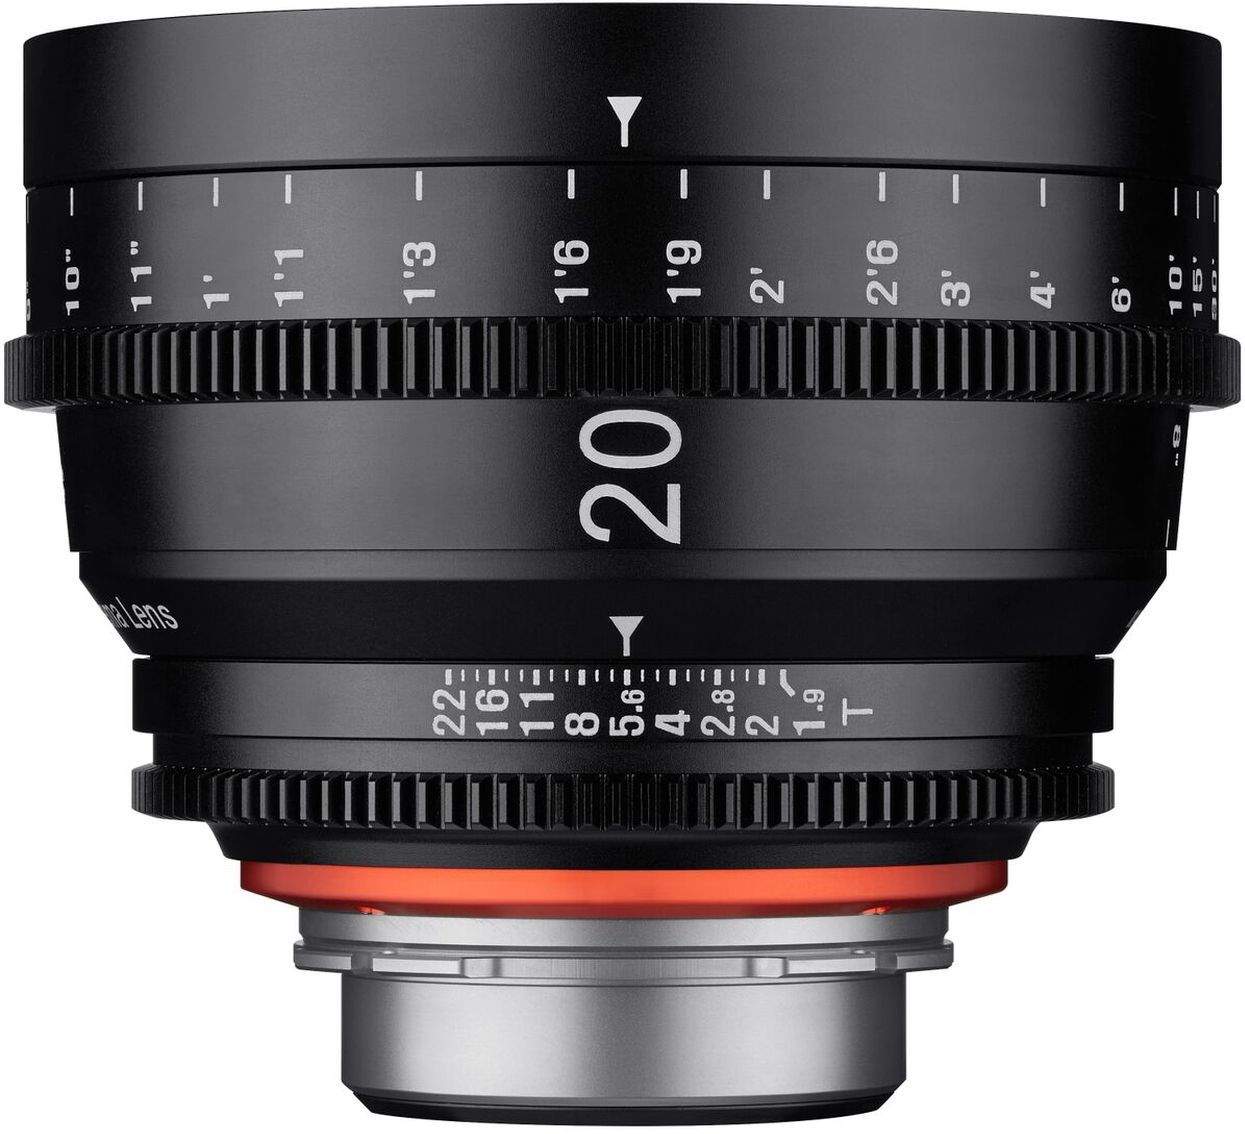 20mm T1.9 XEEN Nikon Full Frame Cinema Lens main image